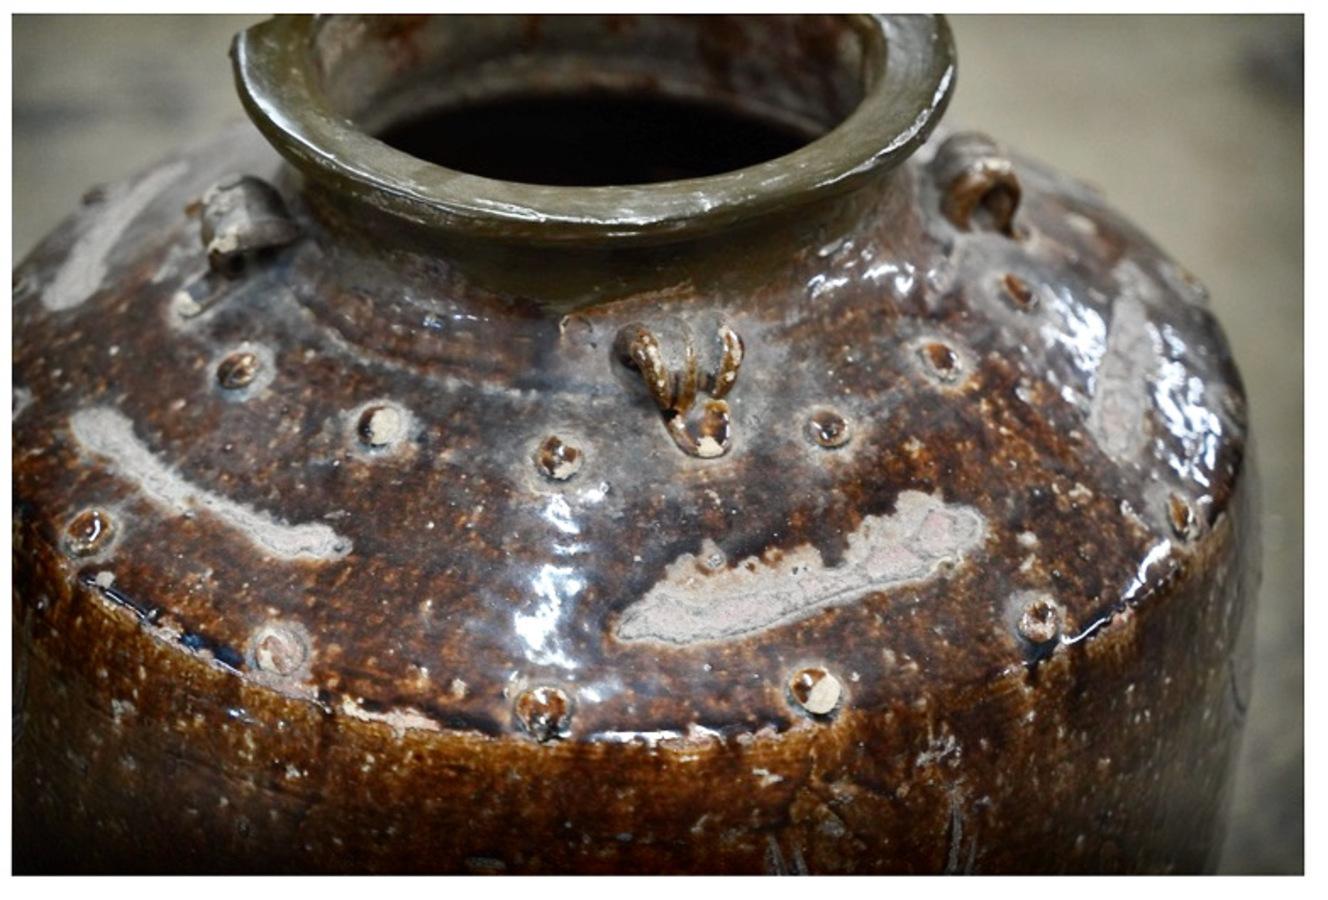 Dies ist eine große chinesische Martaban-Kanne aus Steinzeug des 17. Jahrhunderts. Martancan-Krüge wurden zur Aufbewahrung von Lebensmitteln wie Getreide, Tee, Öl etc. entwickelt. Die größeren Gefäße wurden für den Transport anderer zerbrechlicher